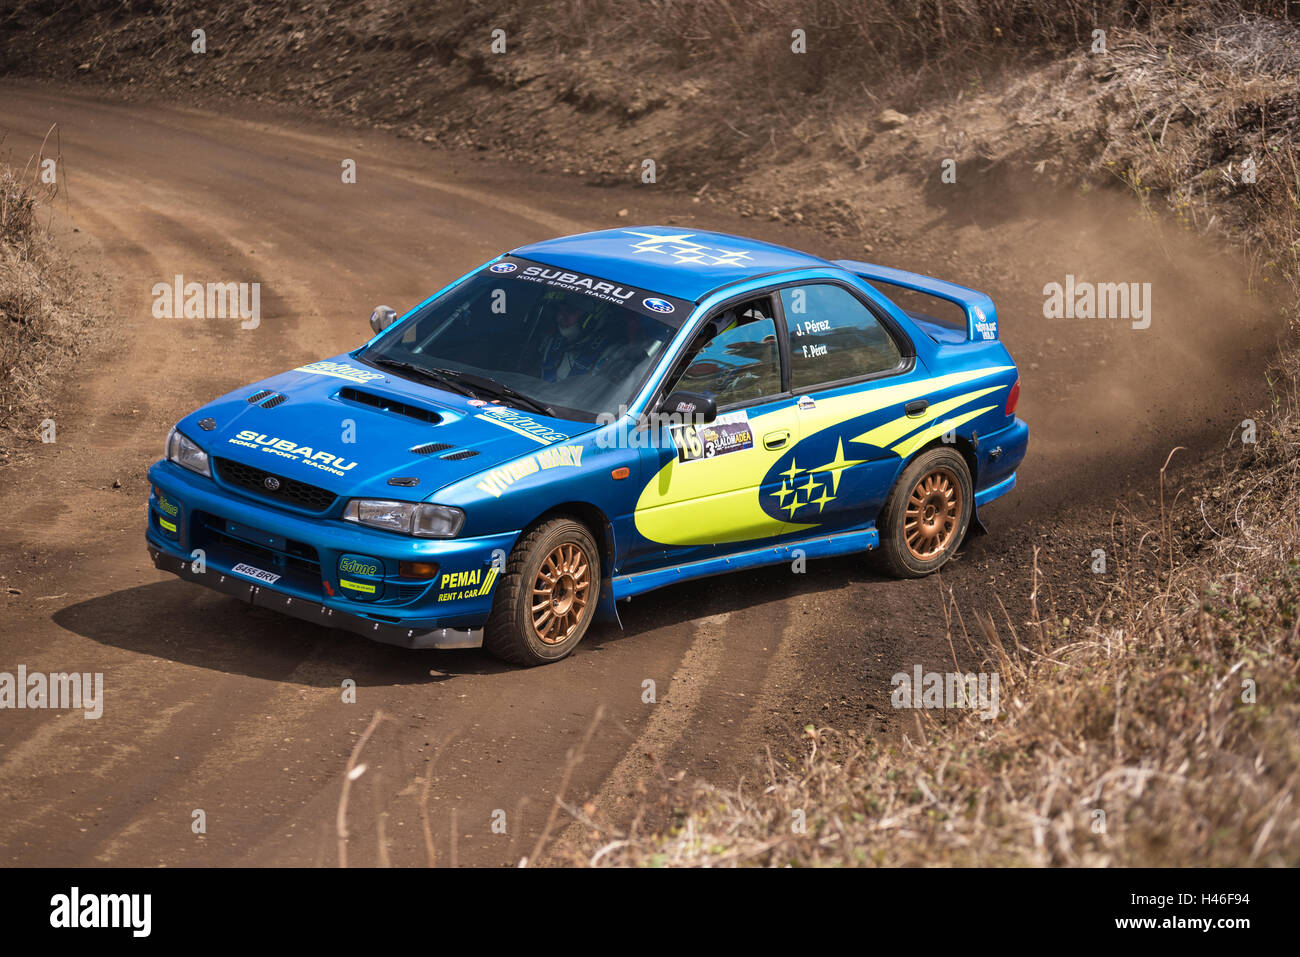 LA PALMA, Spagna - 10 settembre: Subaru Impreza durante il rally show Villa de Mazo il 10 settembre 2016 a La Palma, isola Canarie, Foto Stock